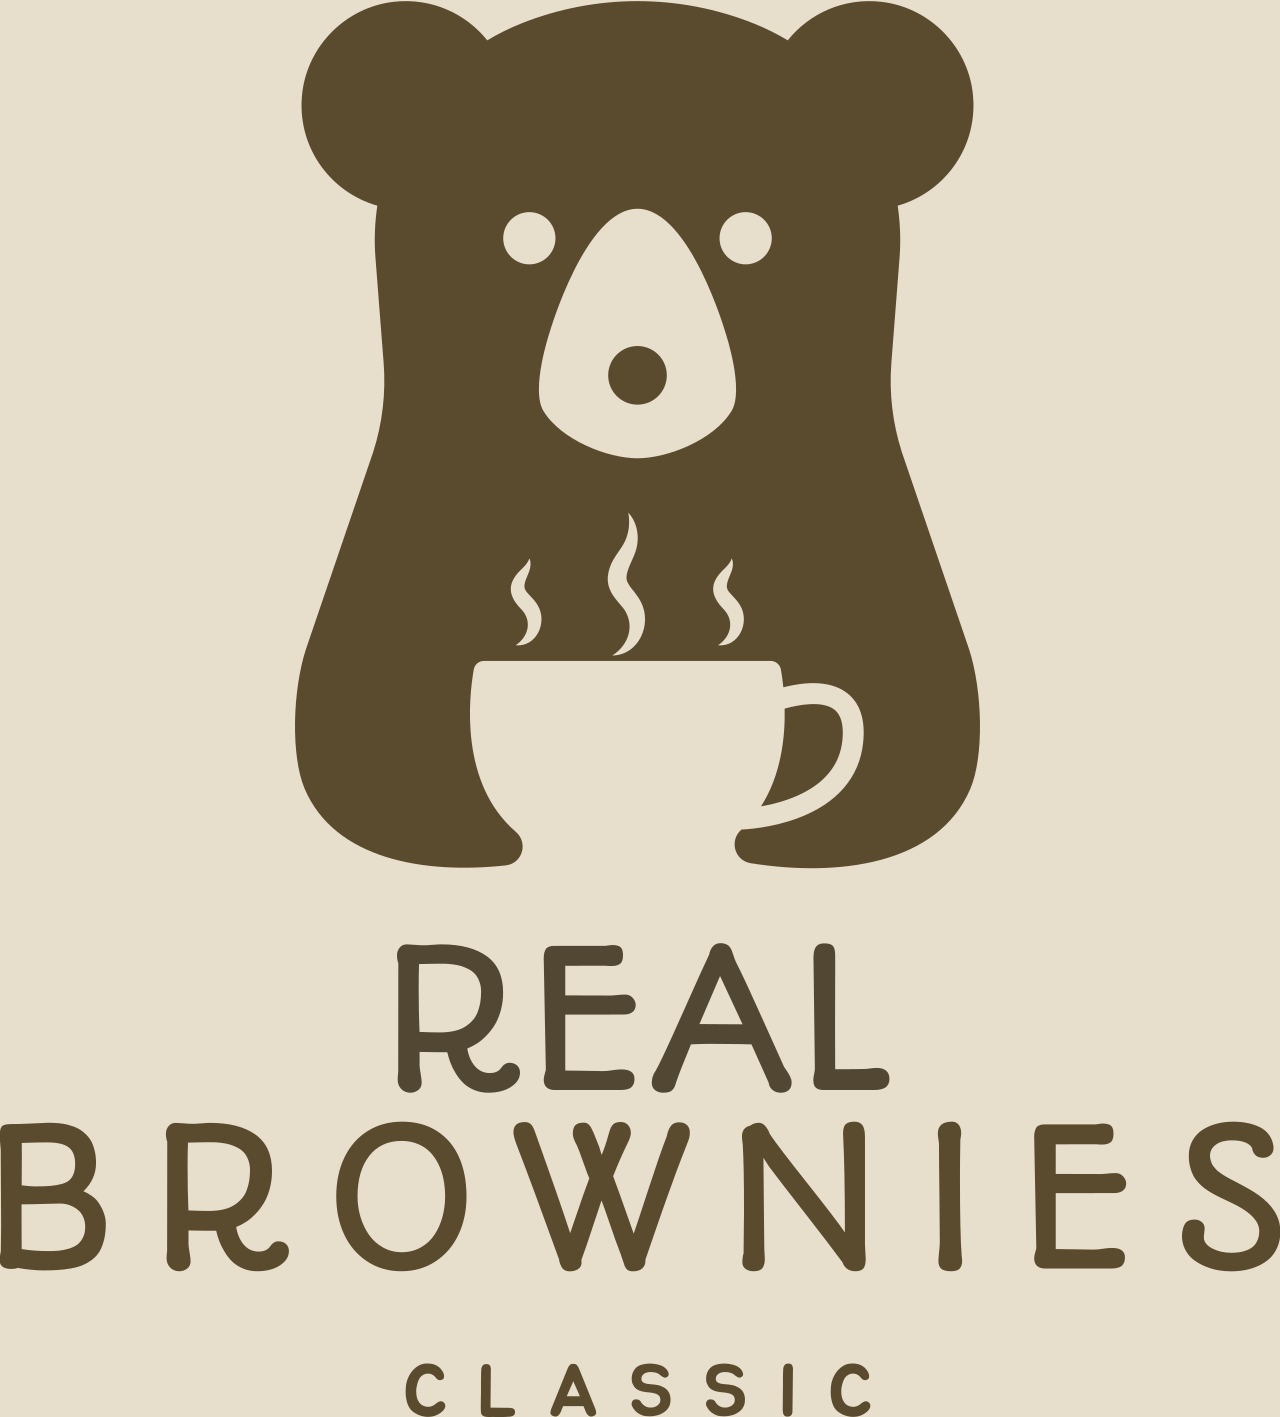 BROWNIES's logo